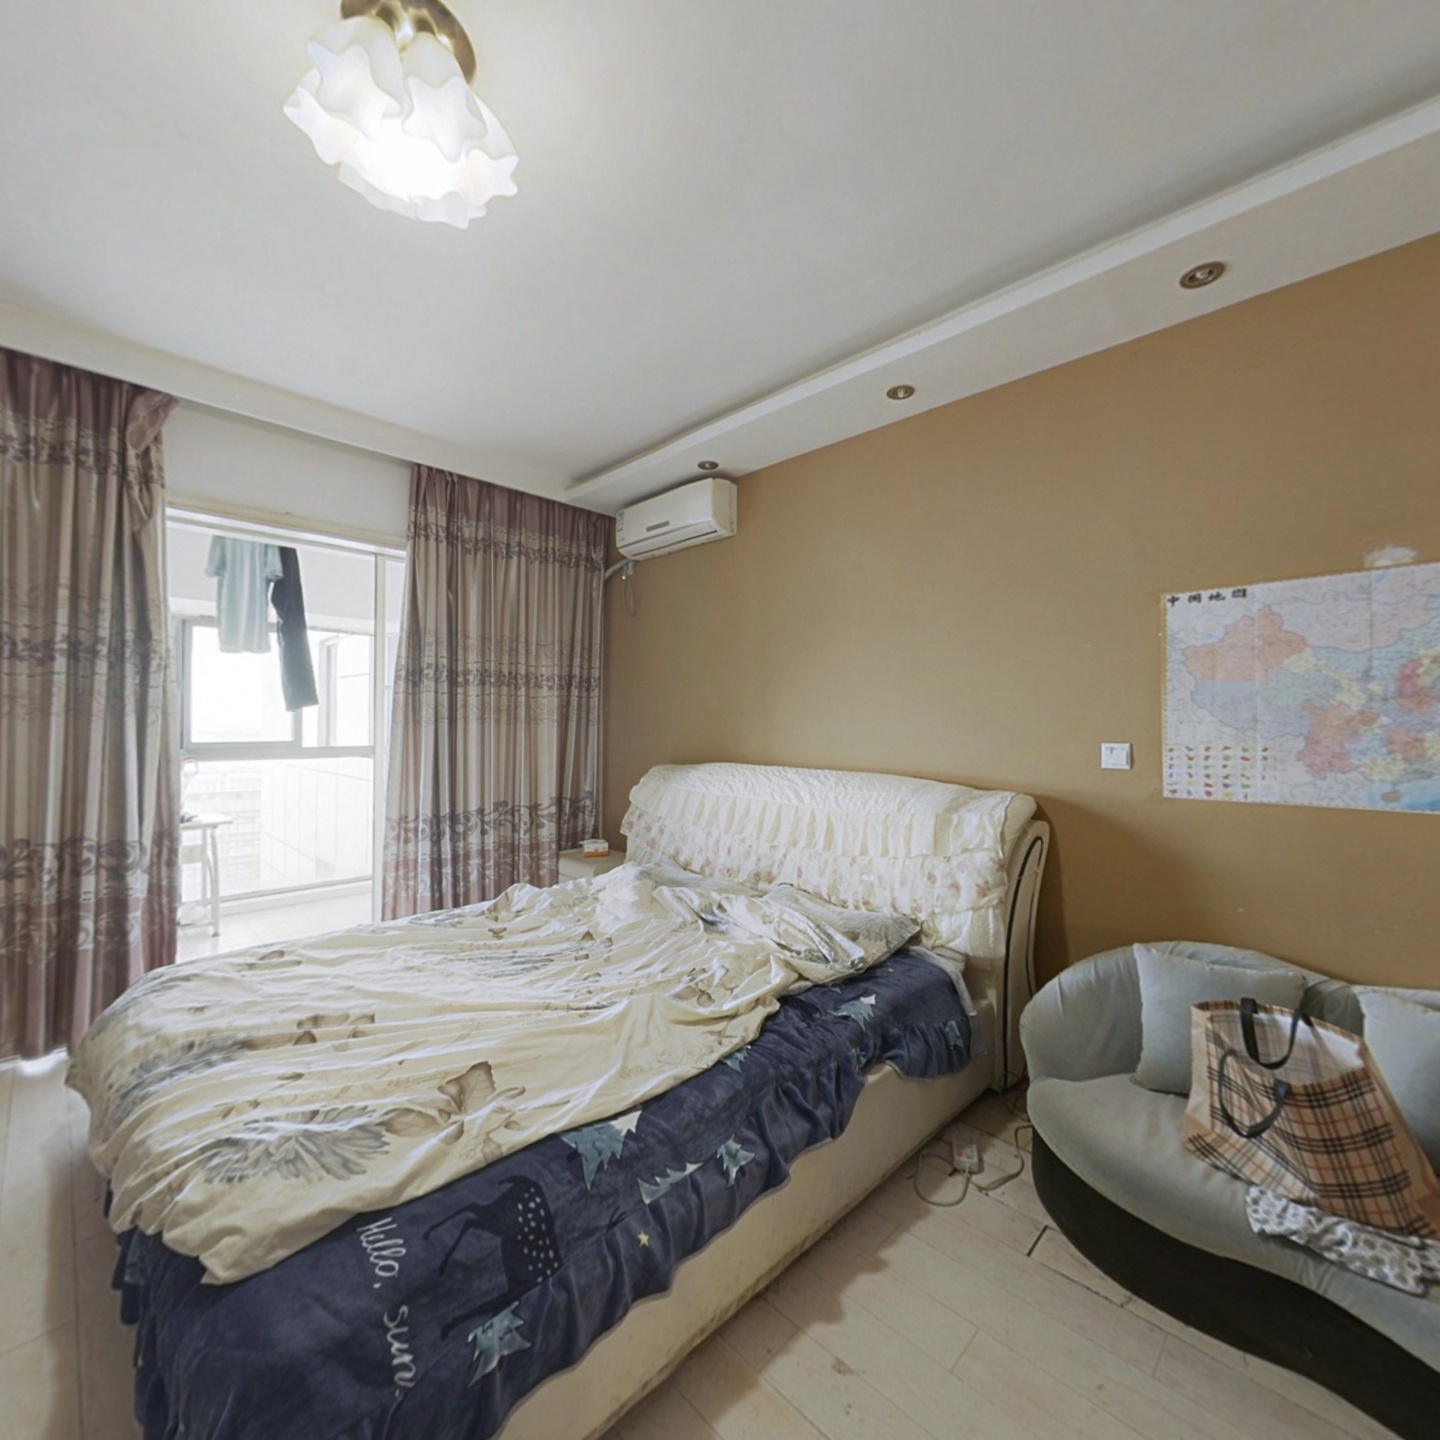 中威国际 精装修公寓  价格美丽 配套成熟